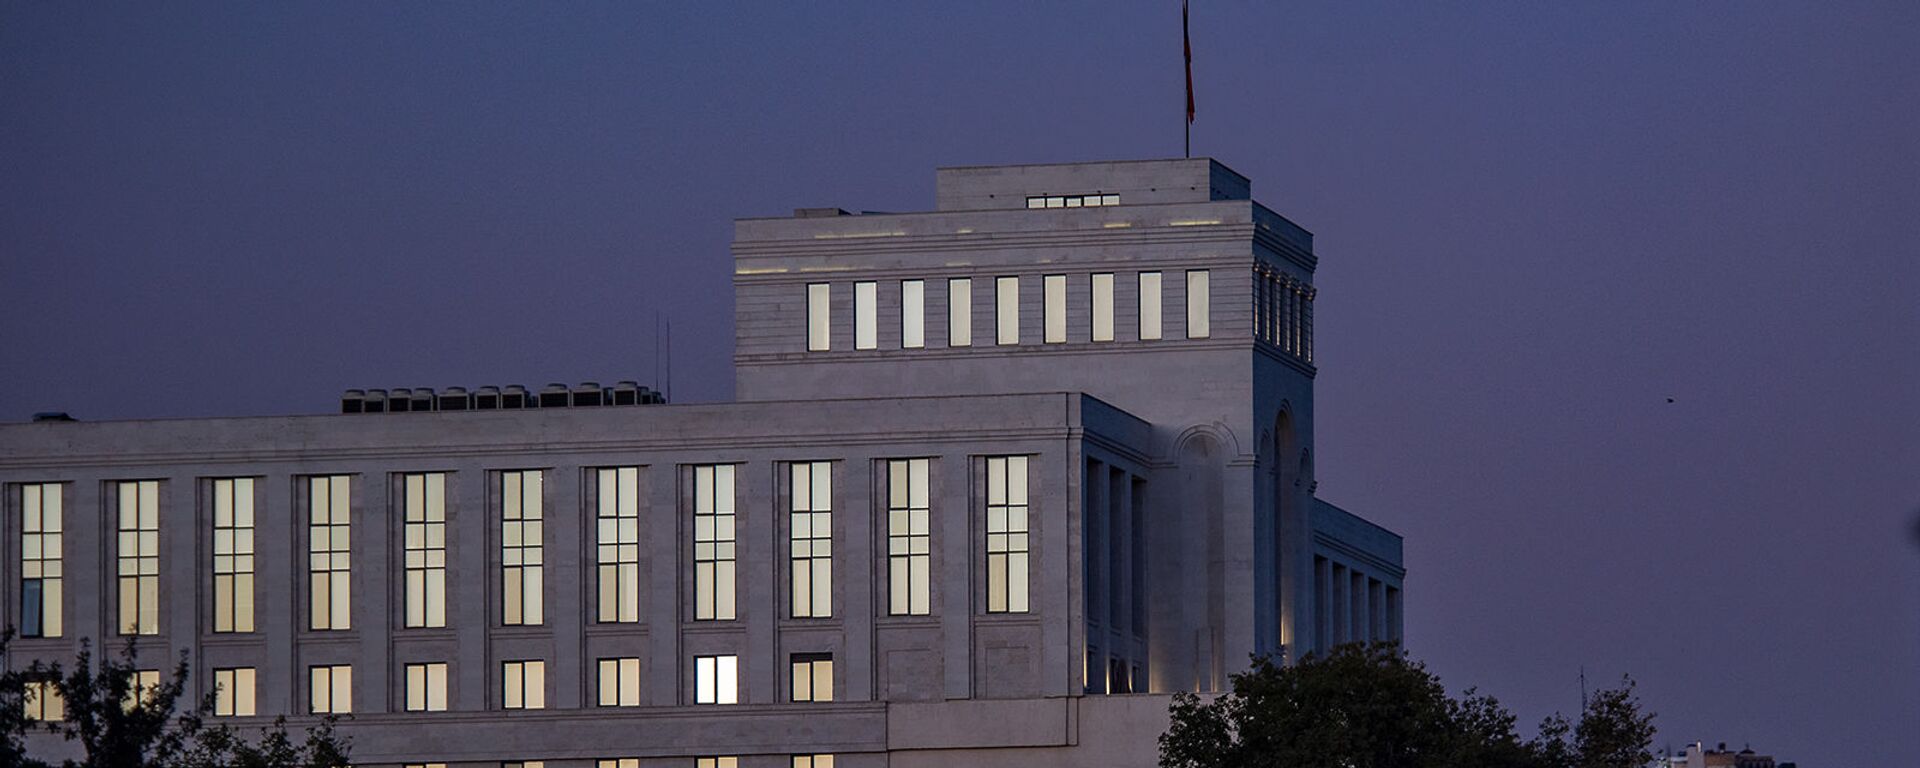 Здание Министерства иностранных дел Армении - Sputnik Արմենիա, 1920, 17.06.2021